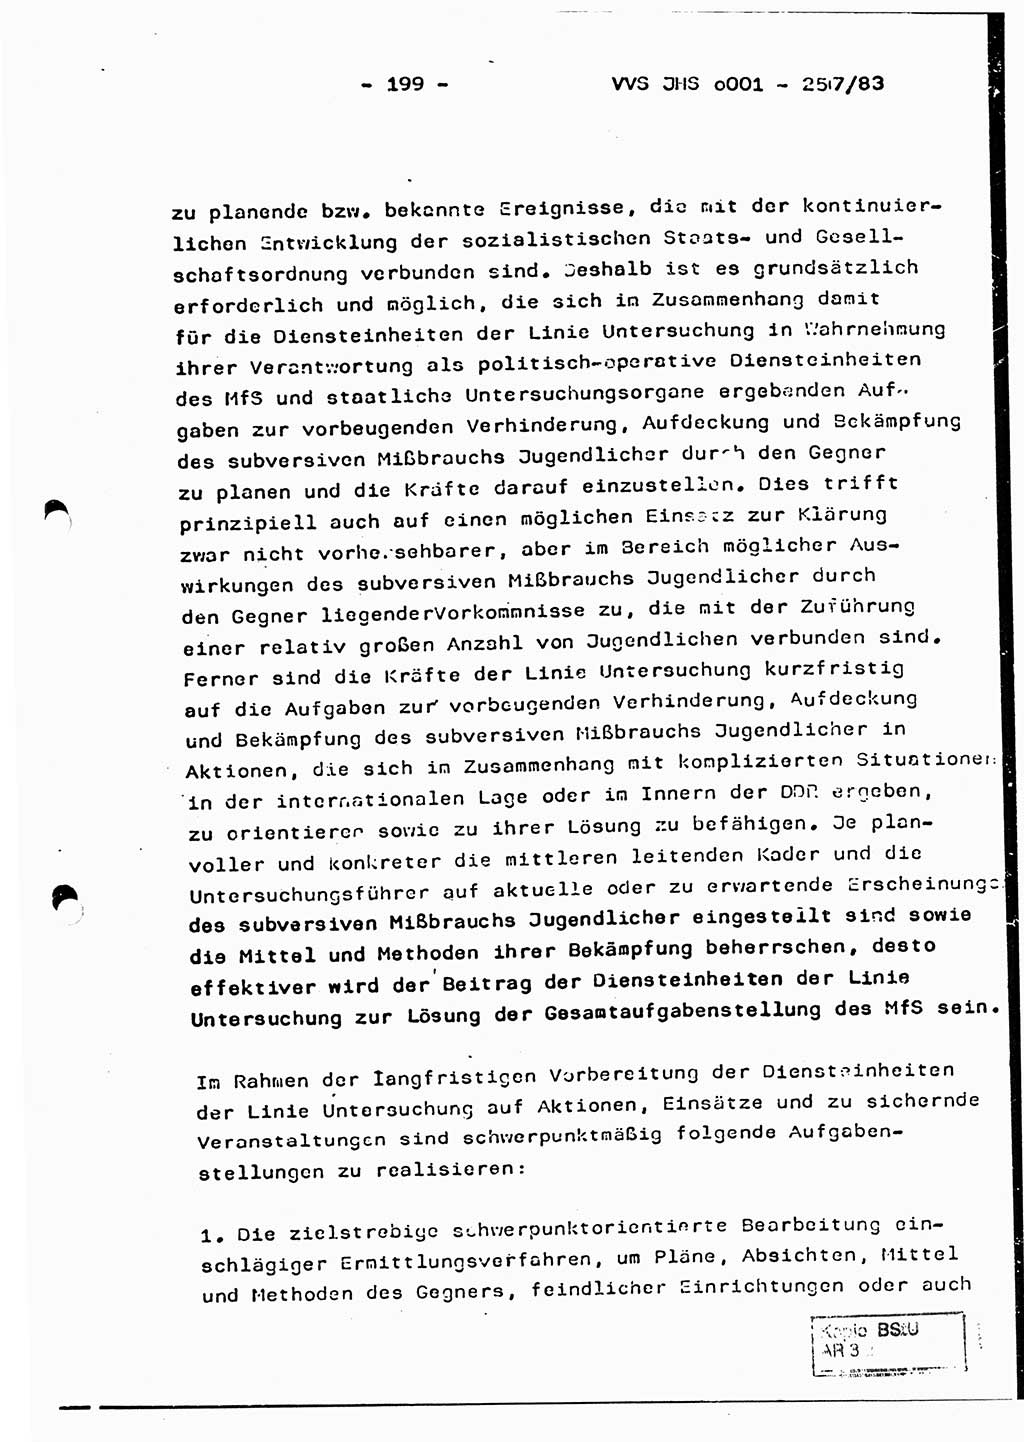 Dissertation, Oberst Helmut Lubas (BV Mdg.), Oberstleutnant Manfred Eschberger (HA IX), Oberleutnant Hans-Jürgen Ludwig (JHS), Ministerium für Staatssicherheit (MfS) [Deutsche Demokratische Republik (DDR)], Juristische Hochschule (JHS), Vertrauliche Verschlußsache (VVS) o001-257/83, Potsdam 1983, Seite 199 (Diss. MfS DDR JHS VVS o001-257/83 1983, S. 199)